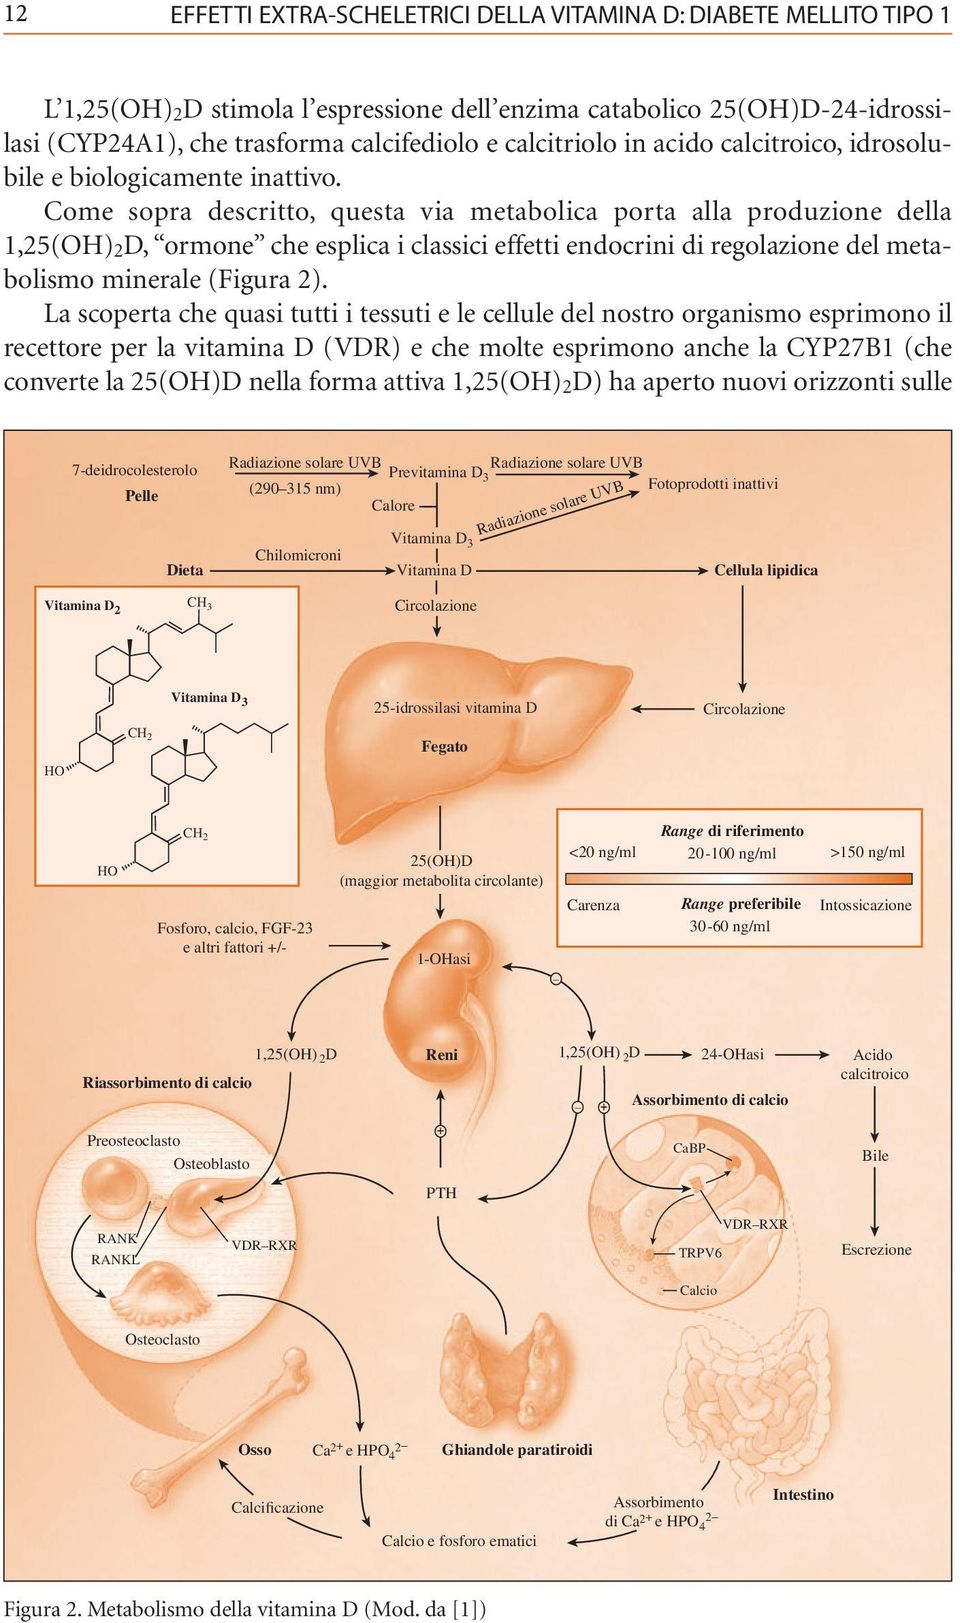 Come sopra descritto, questa via metabolica porta alla produzione della, ormone che esplica i classici effetti endocrini di regolazione del metabolismo minerale (Figura 2).